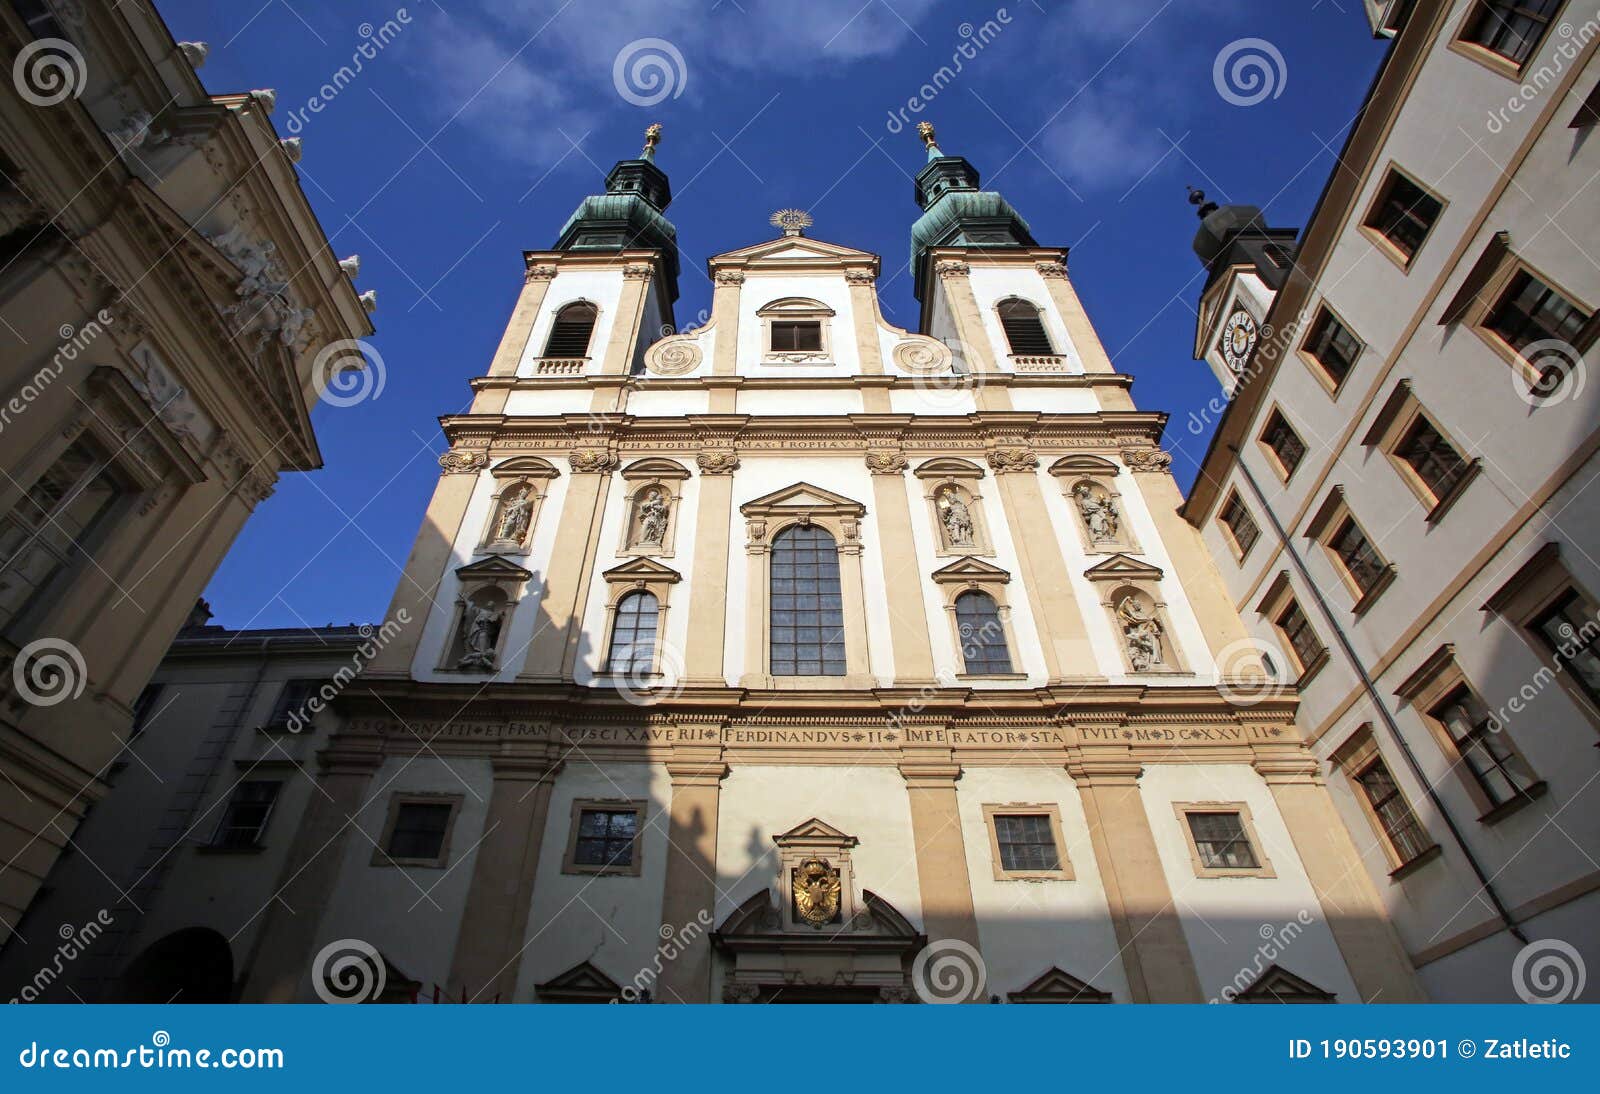 jesuits church in vienna, austria